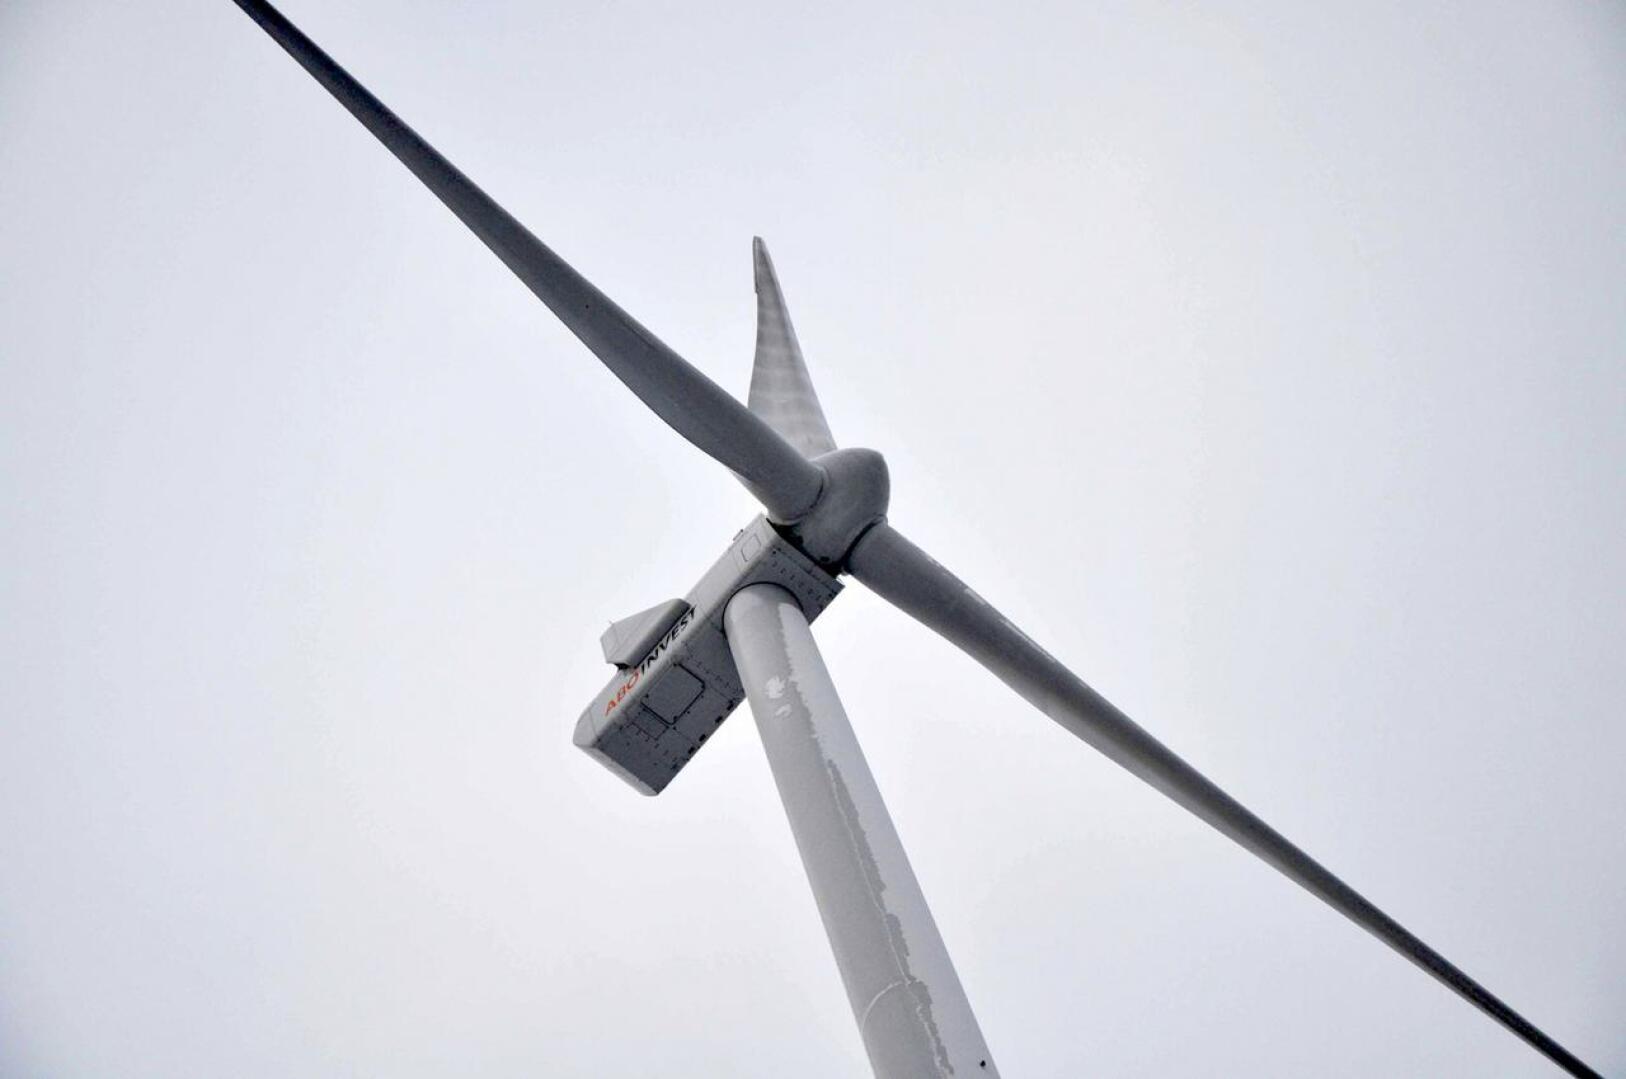 Kaukasen tuulipuistoon Kannukseen rakennetaan kahdeksan tuulimyllyä, joiden on määrä tuottaa sähköä kahden vuoden kuluttua.